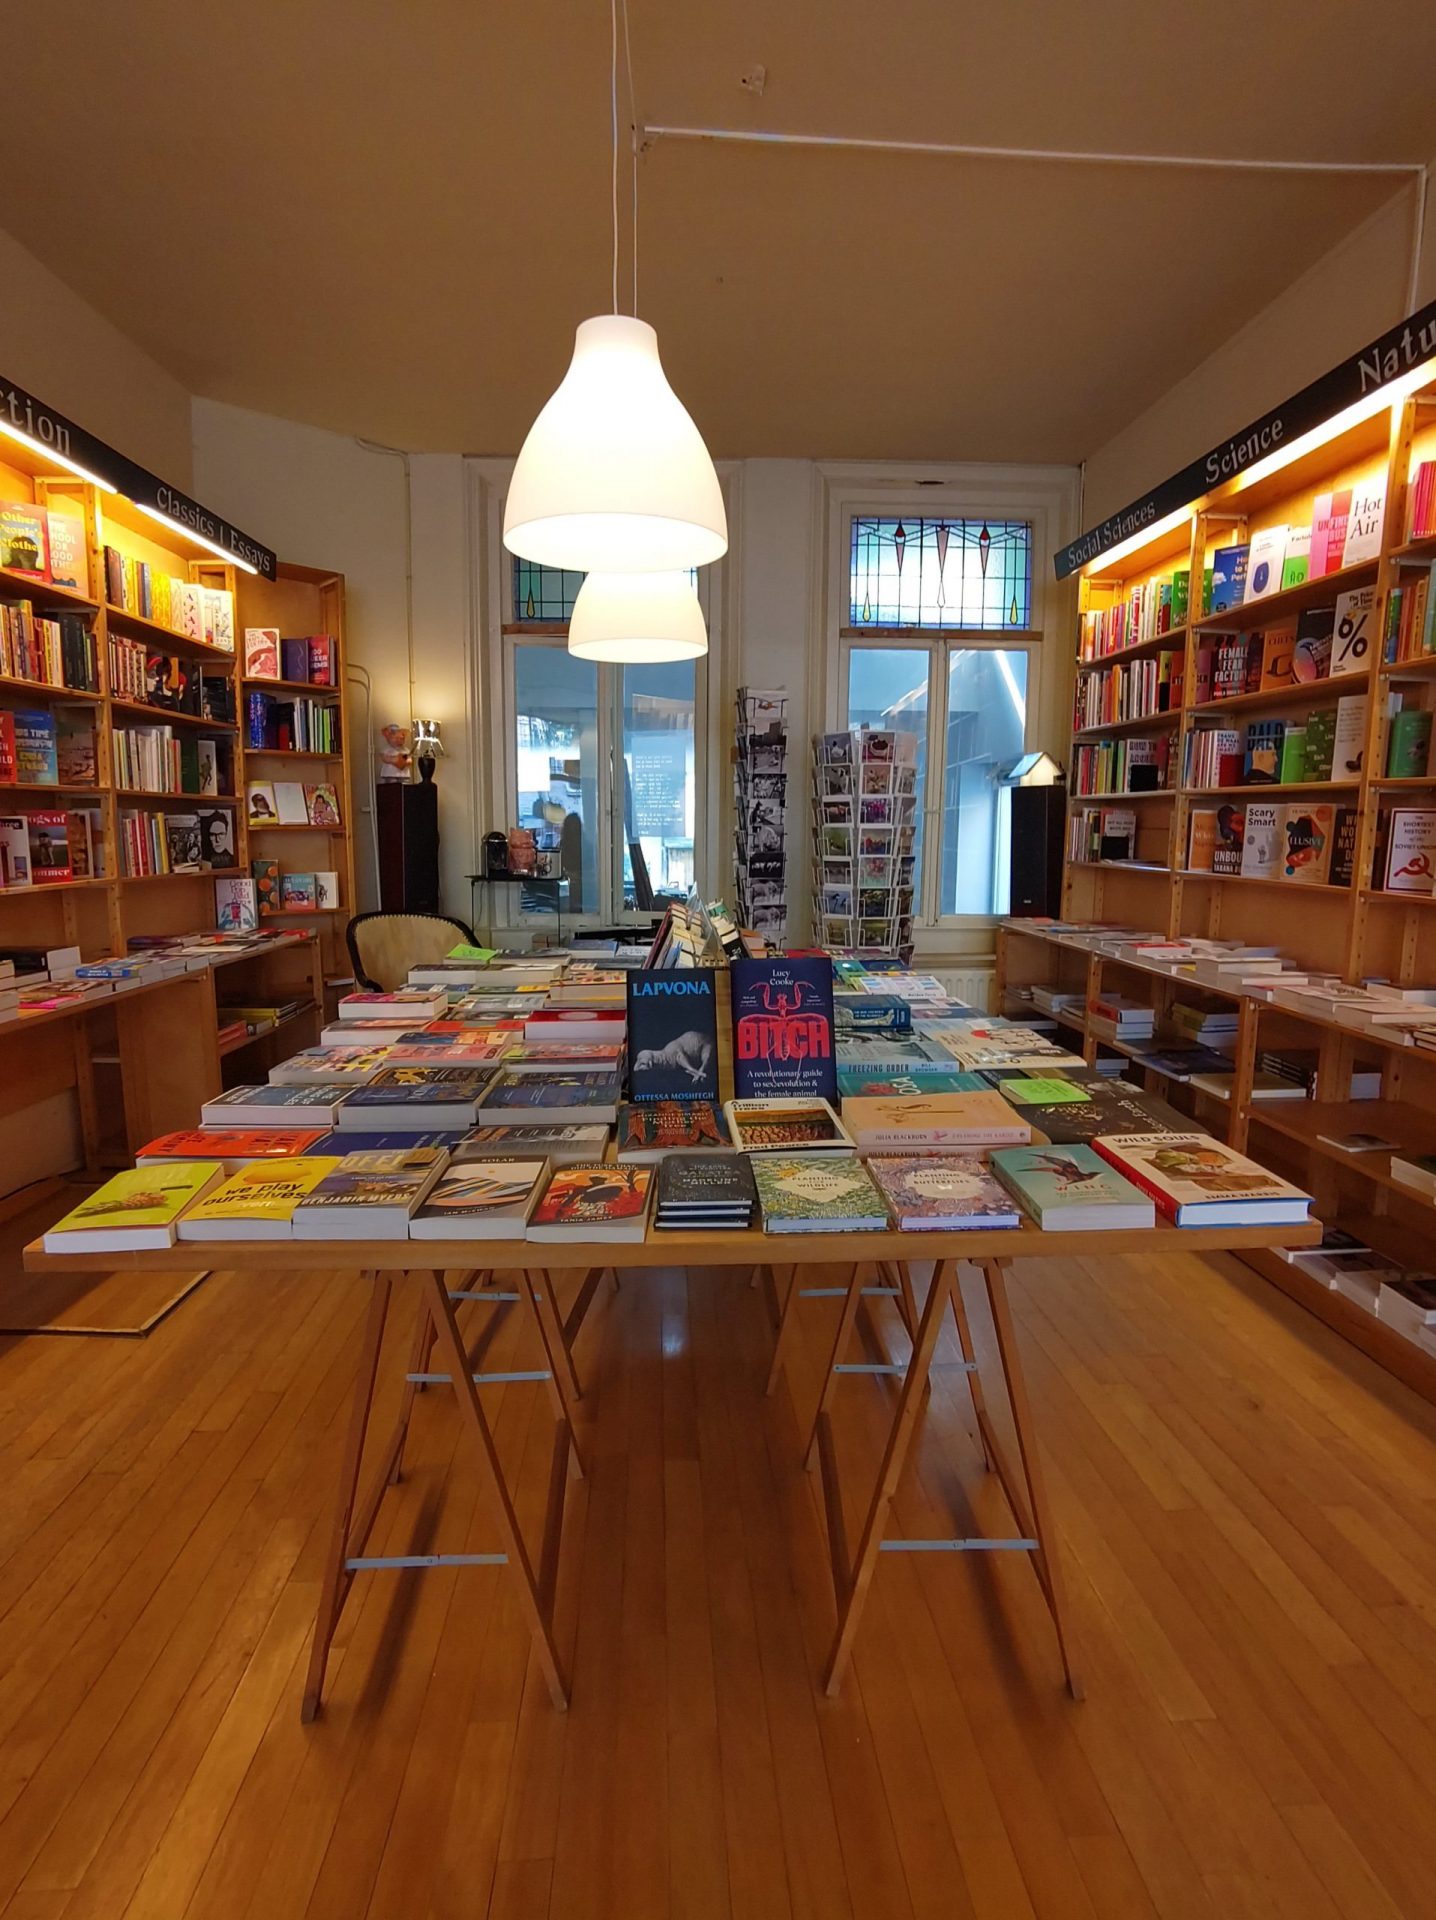 Walter's Bookshop Groningen